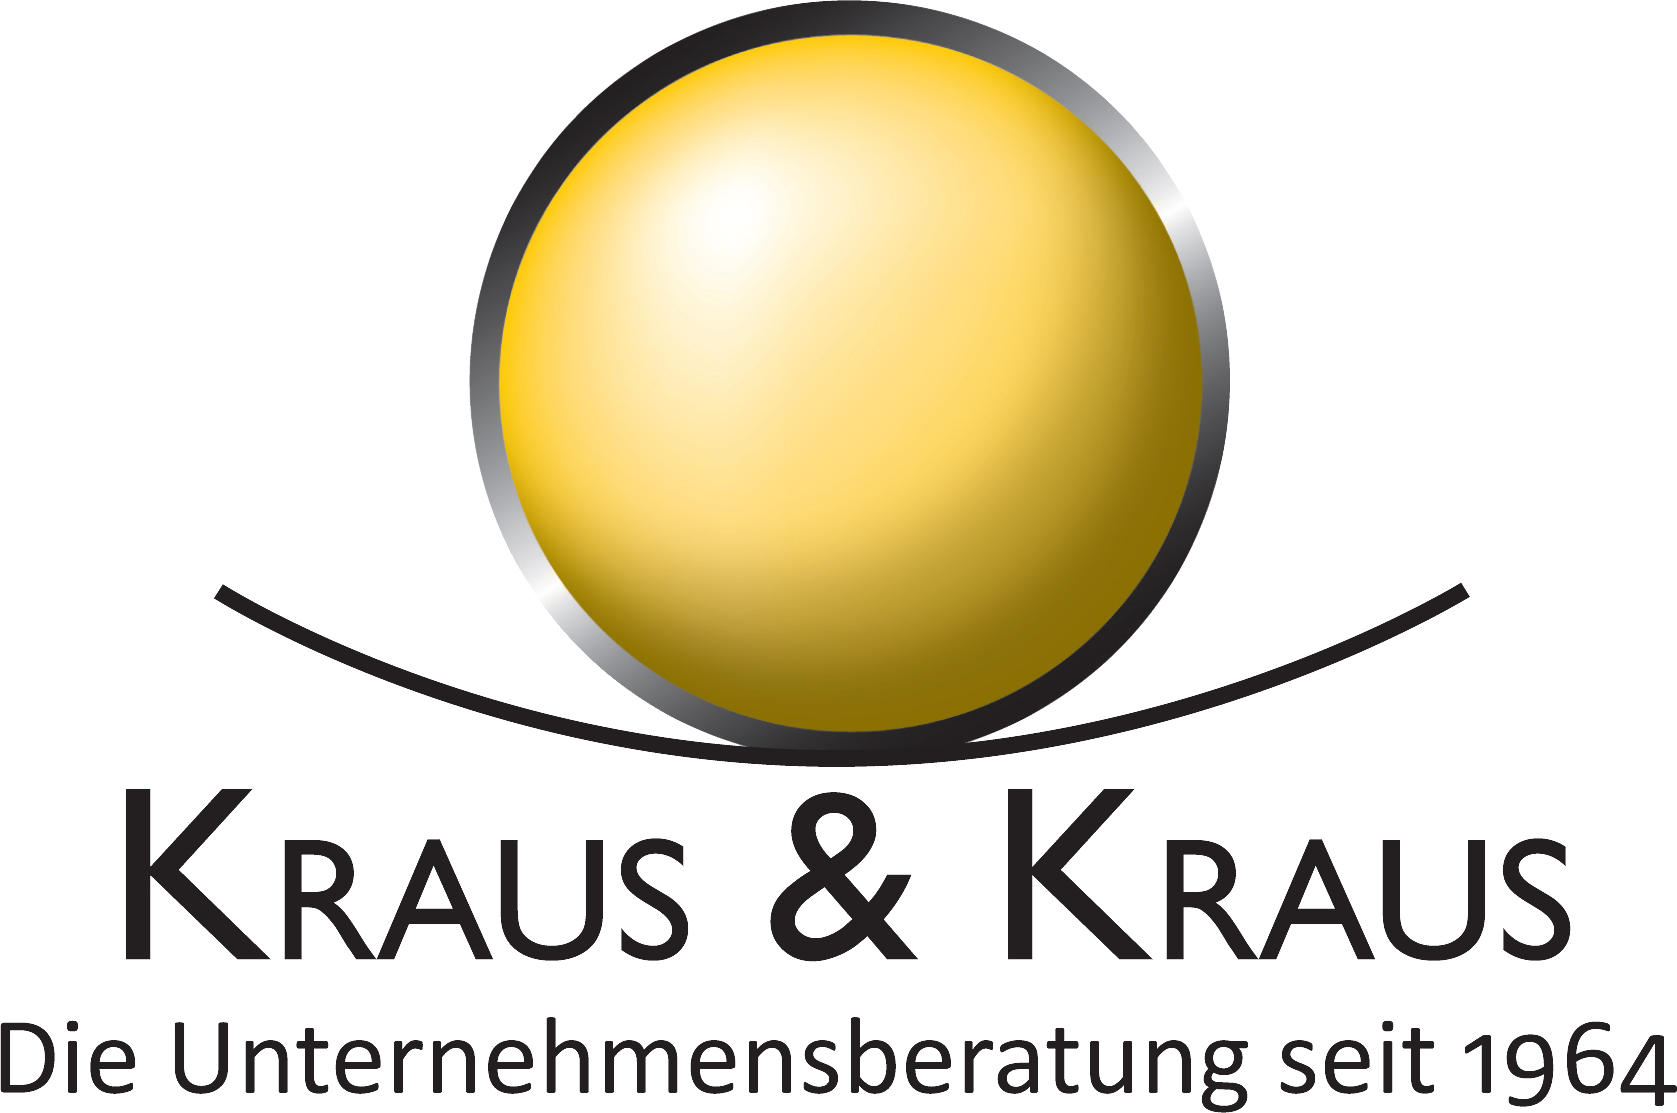 Kraus & Kraus